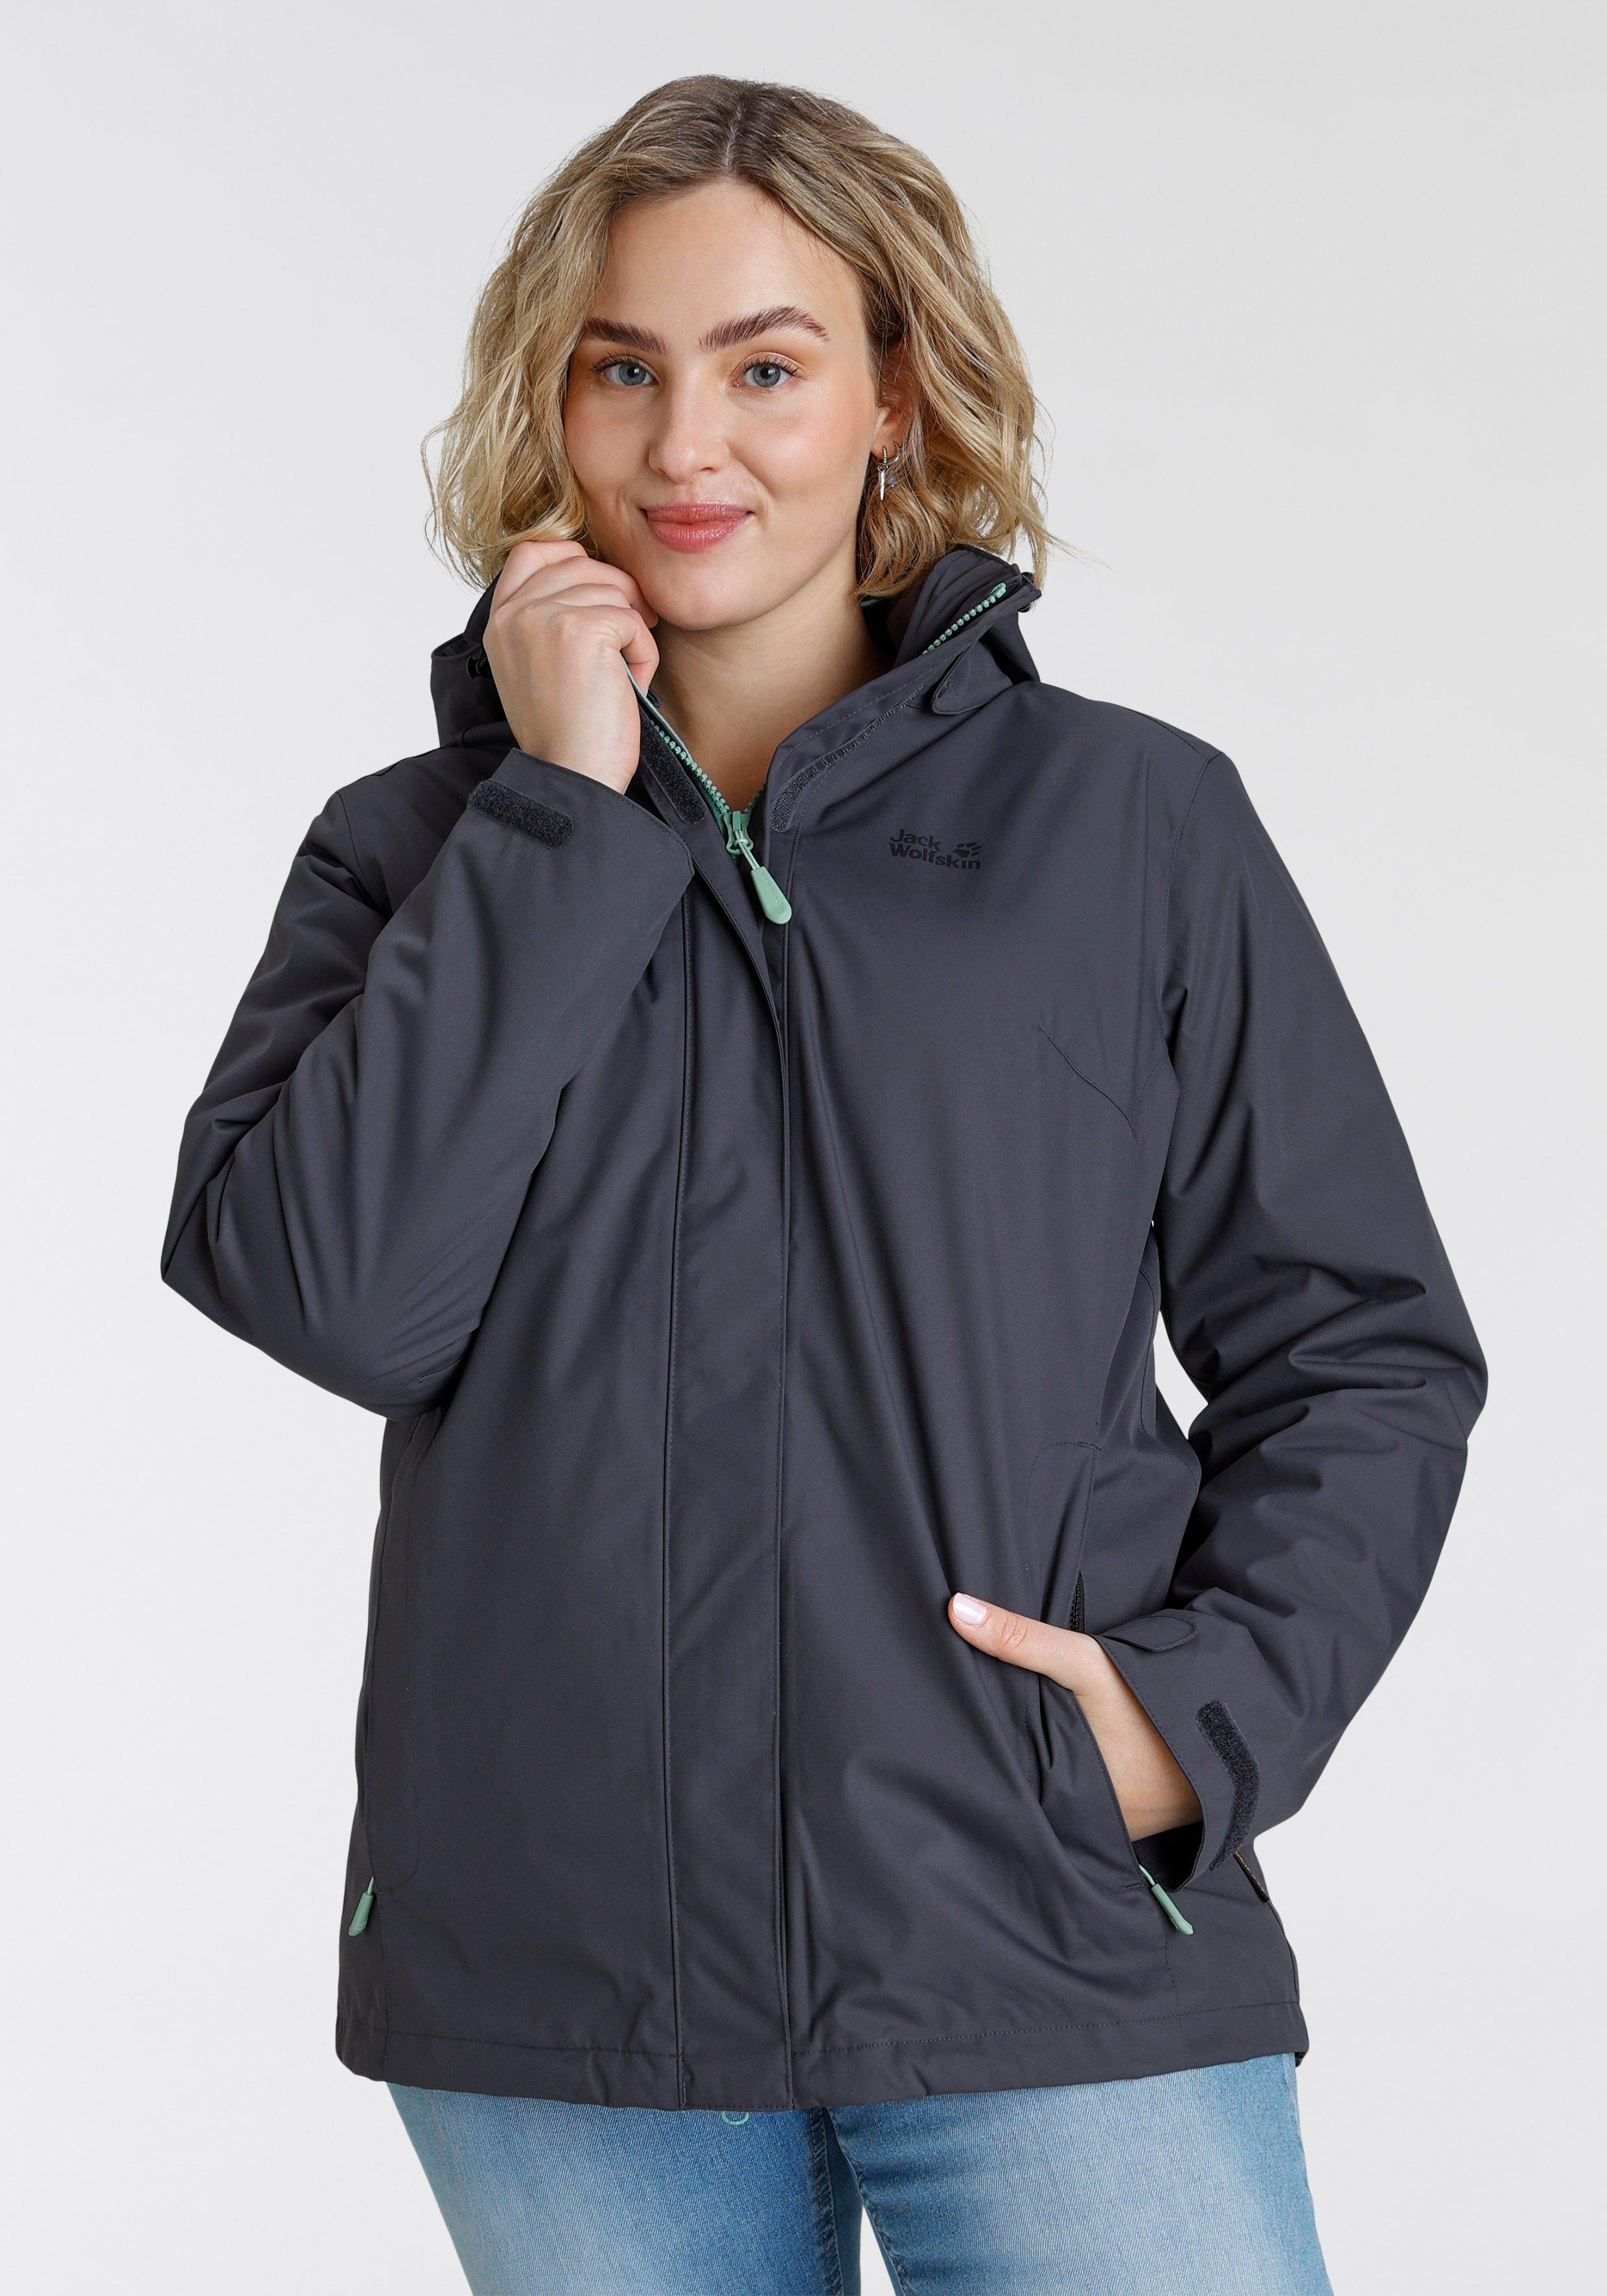 Damen Jacken & Mäntel große Größen grün › Größe 50 | sheego ♥ Plus Size Mode